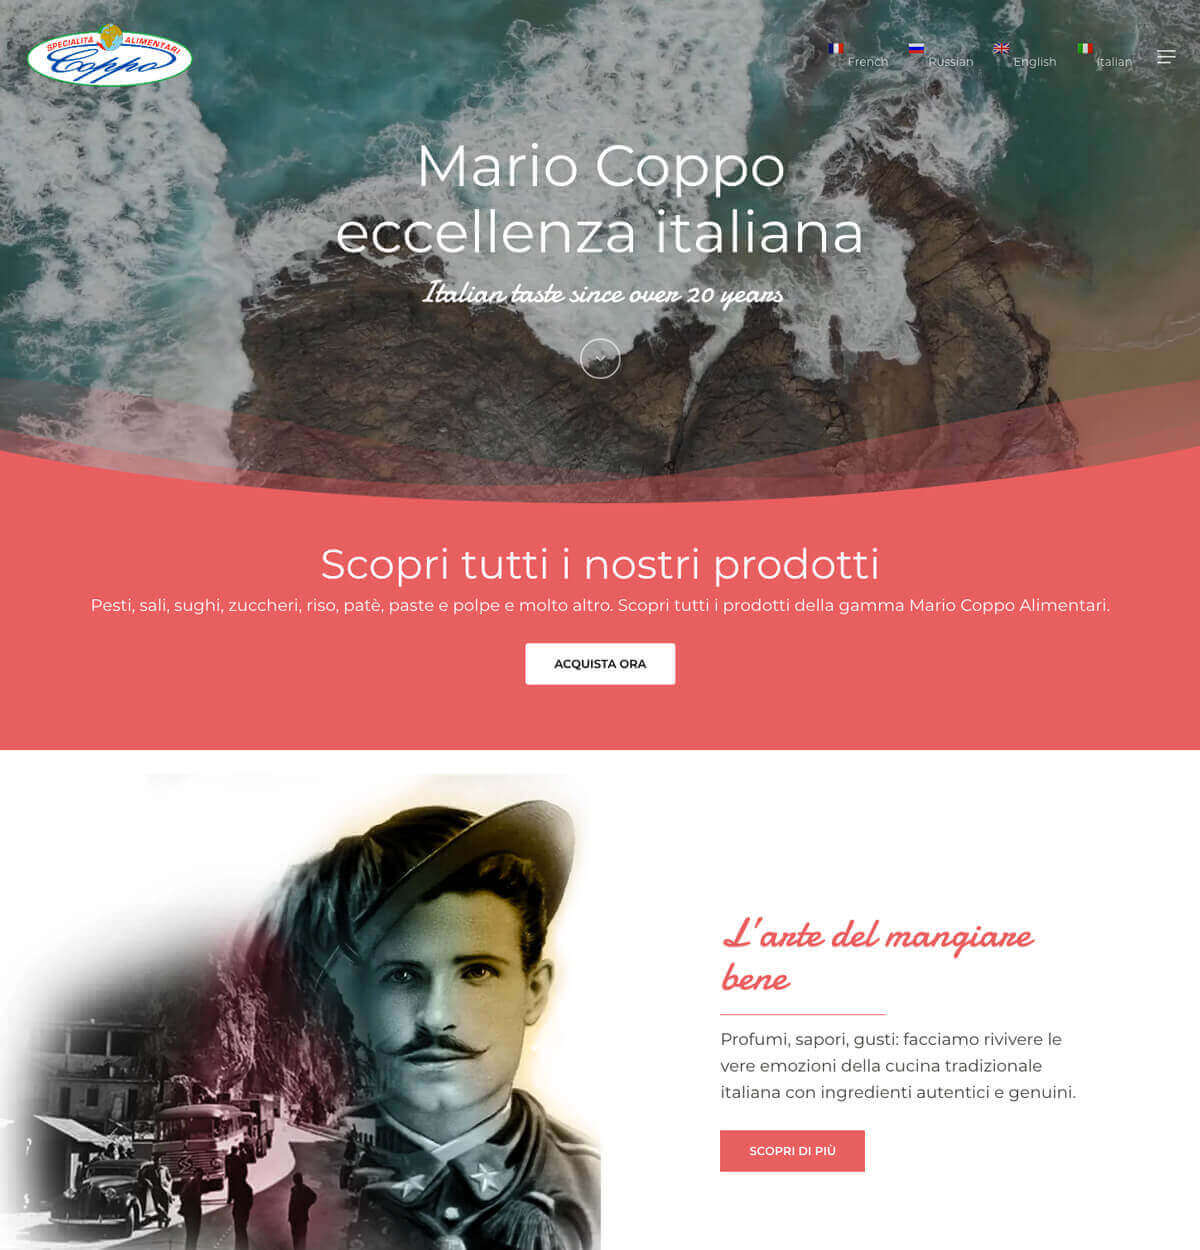 Coppo Alimentari Website web